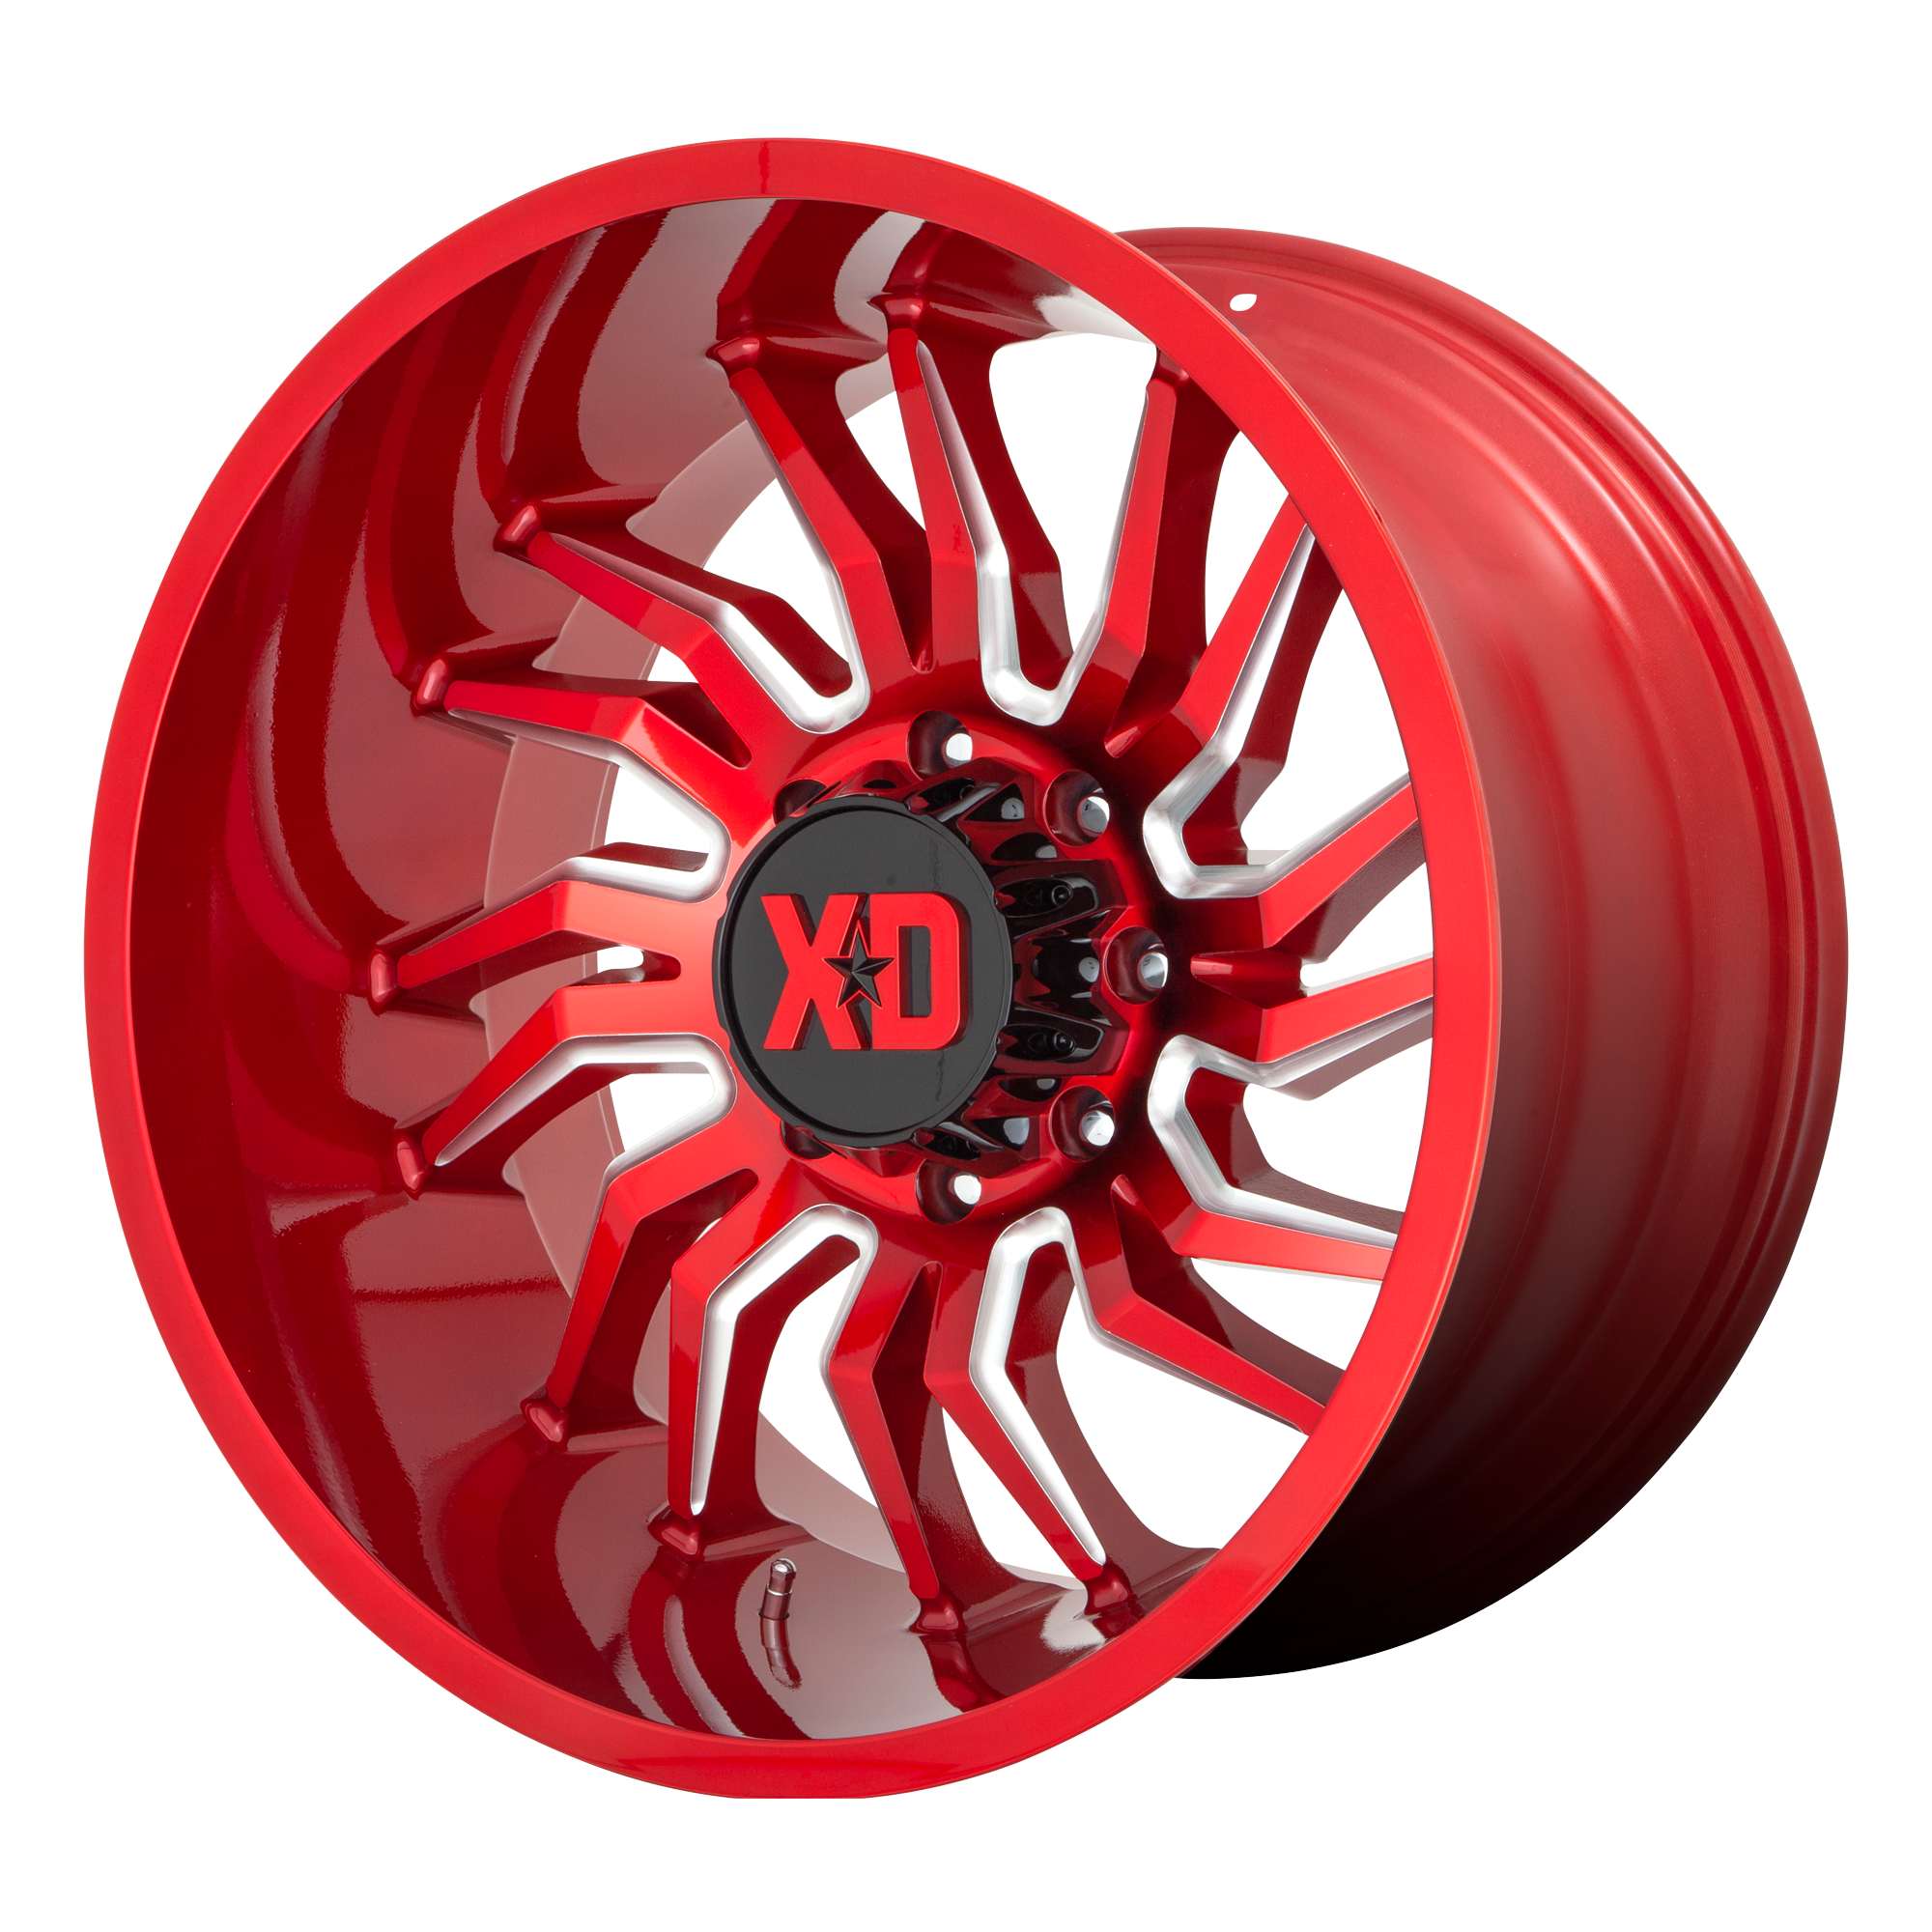 XD 22"x12" Non-Chrome Candy Red Milled Custom Wheel ARSWCWXD85822287944N